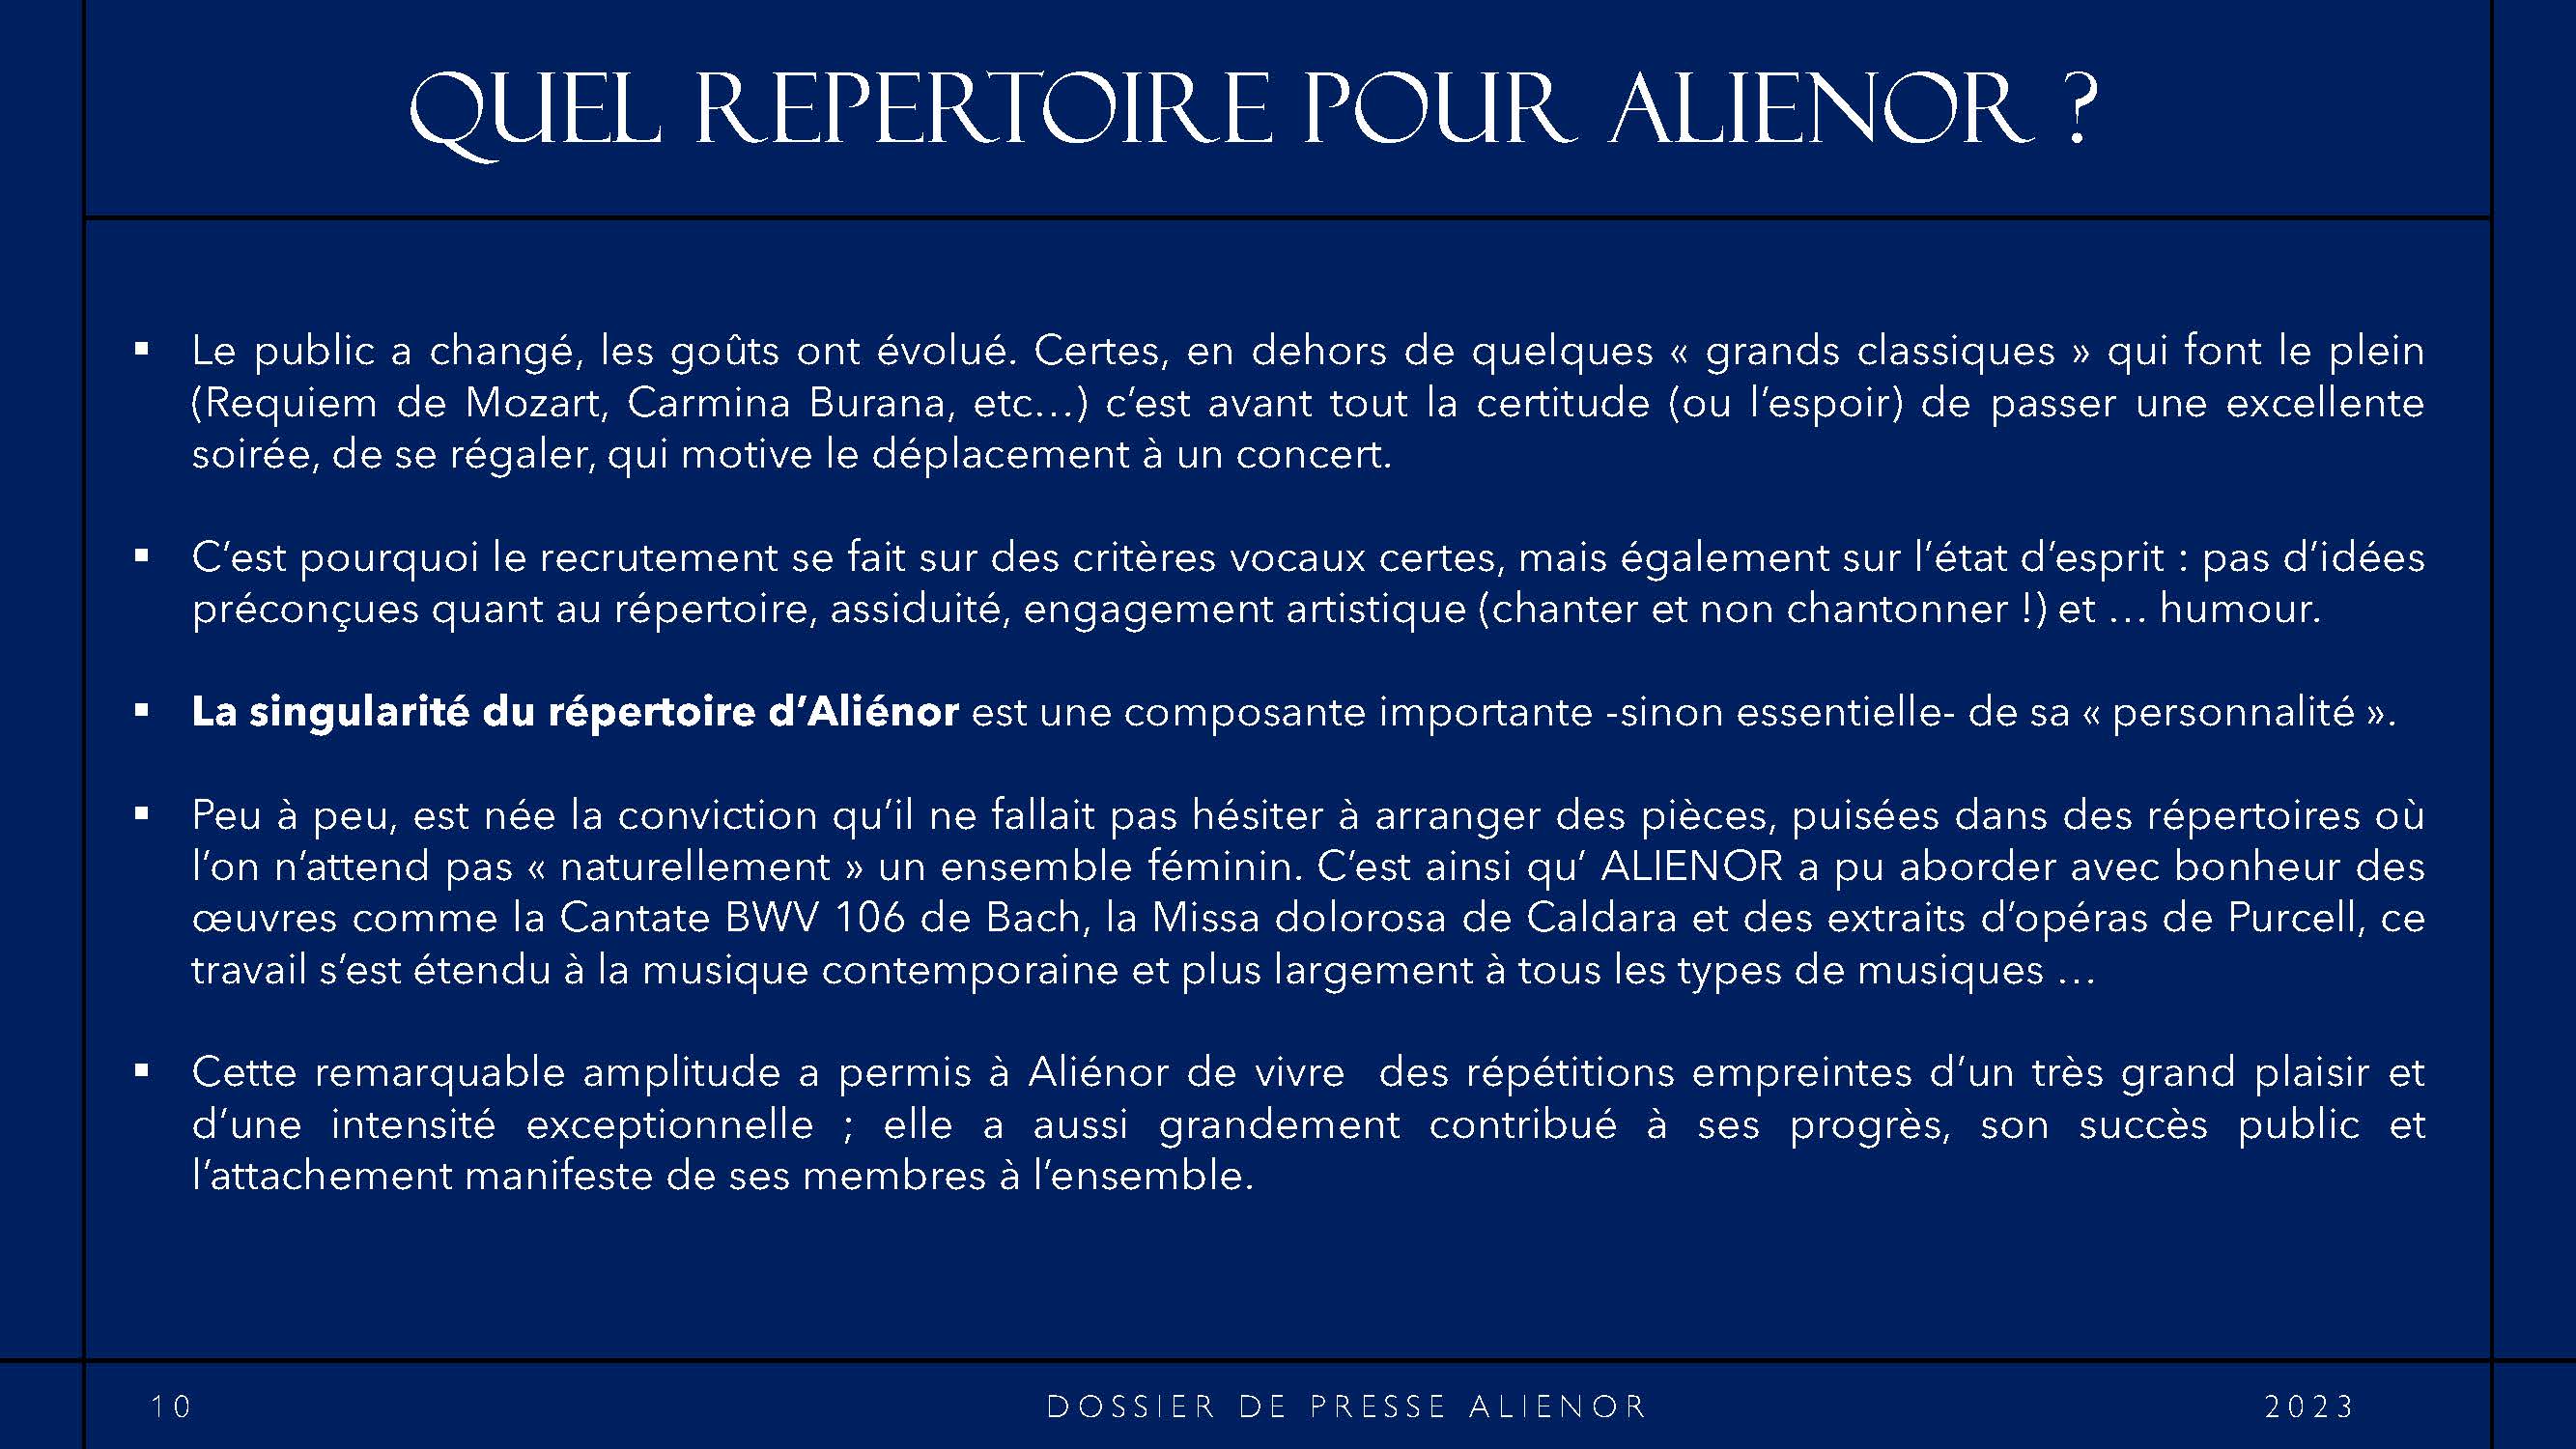 DOSSIER DE PRESSE ALIENOR 2023 BD_Page_10